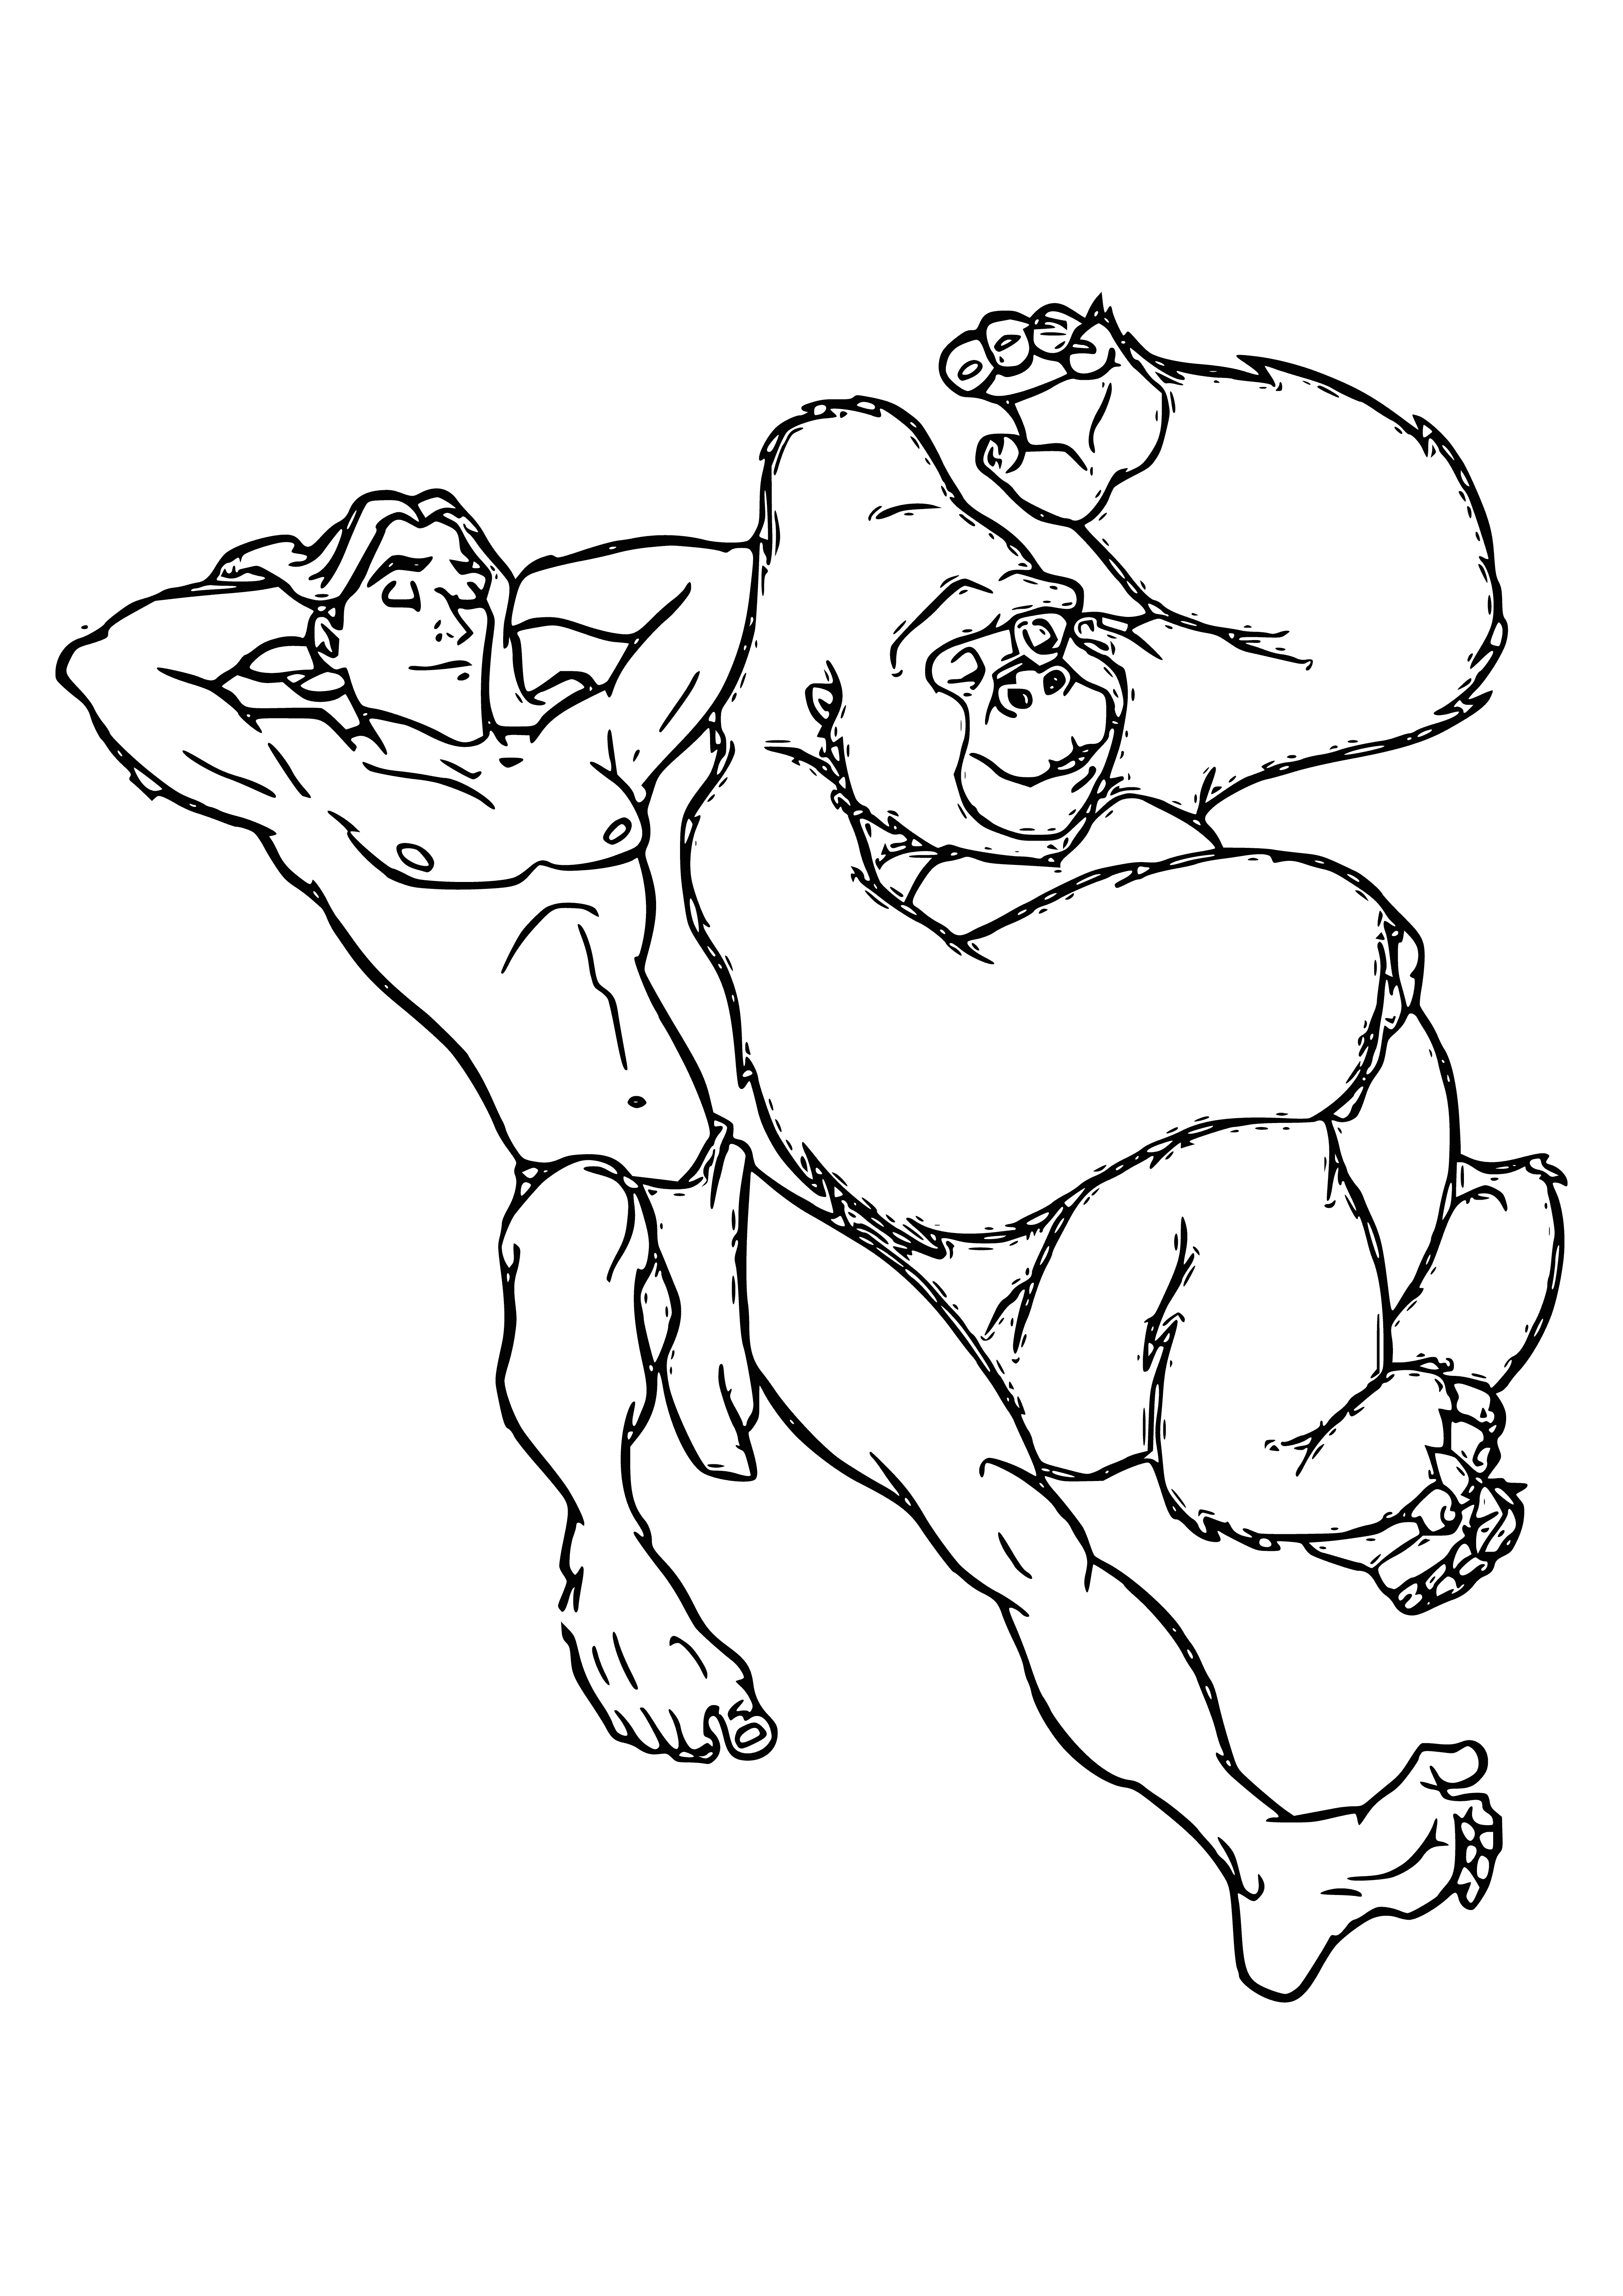 Tarzan And Kala coloring page